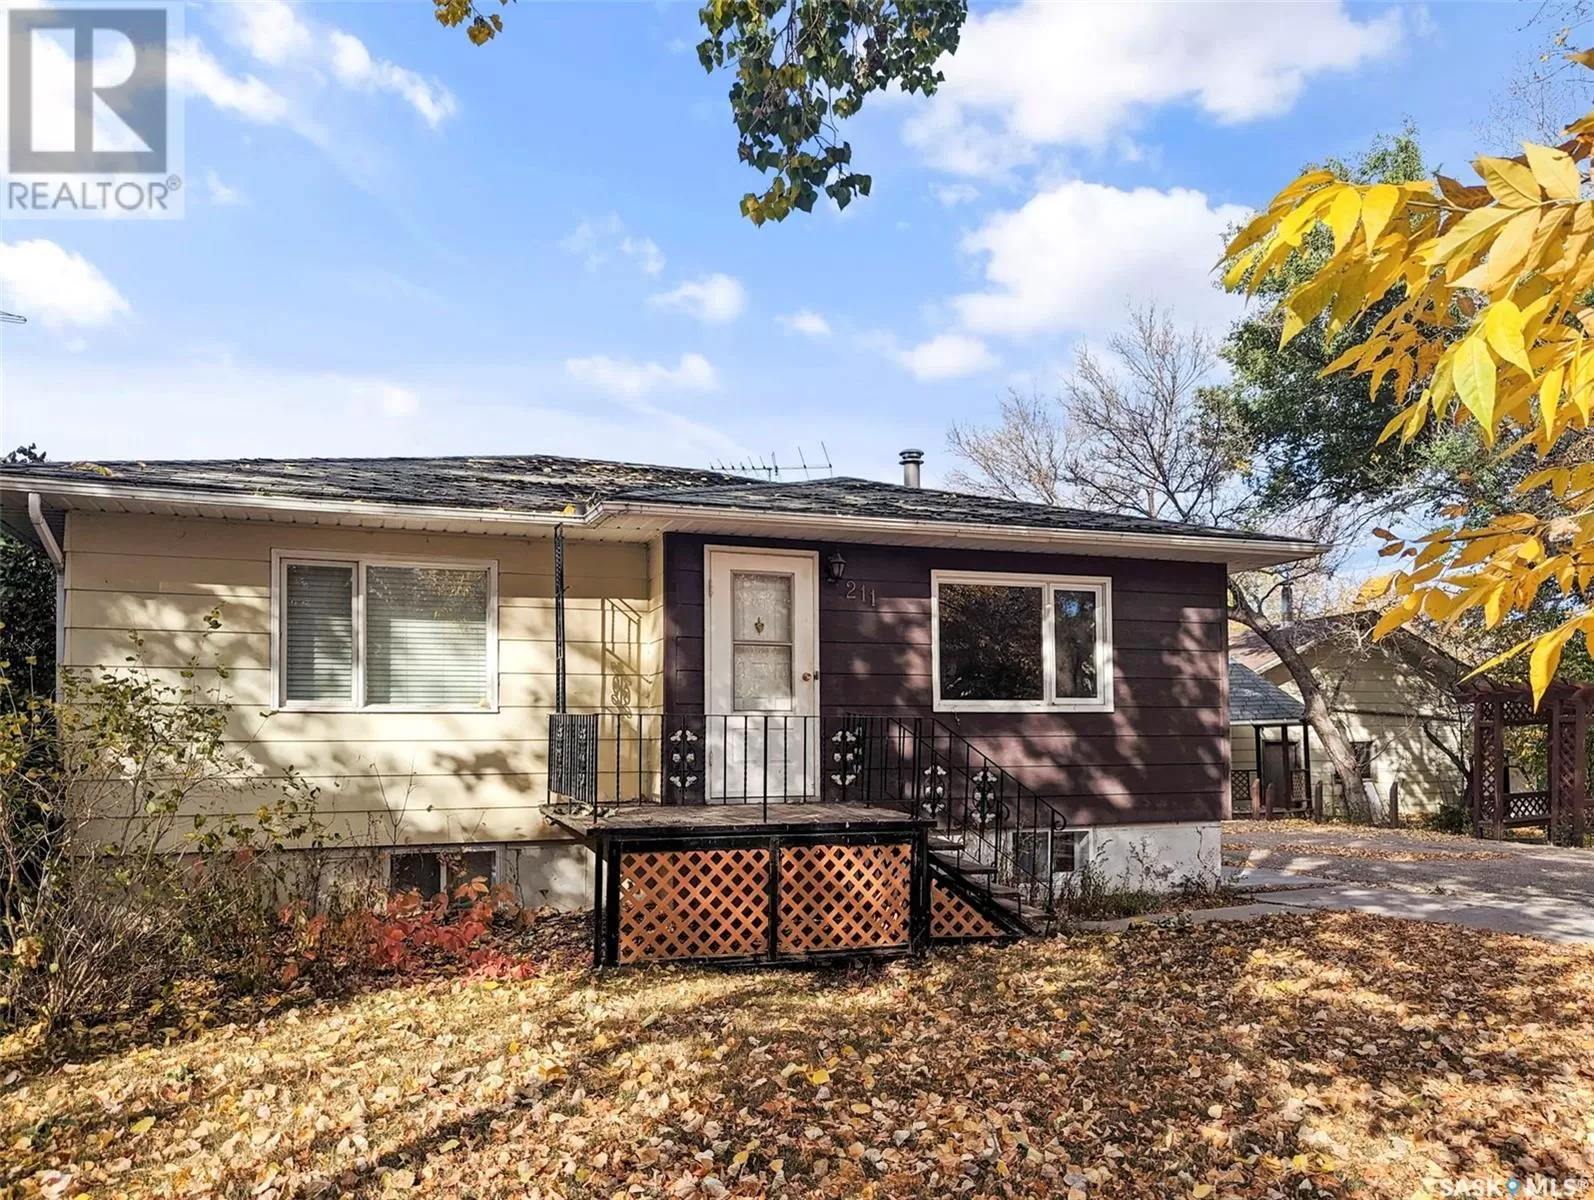 House for rent: 211 Little Flower Avenue, Rosetown, Saskatchewan S0L 2V0